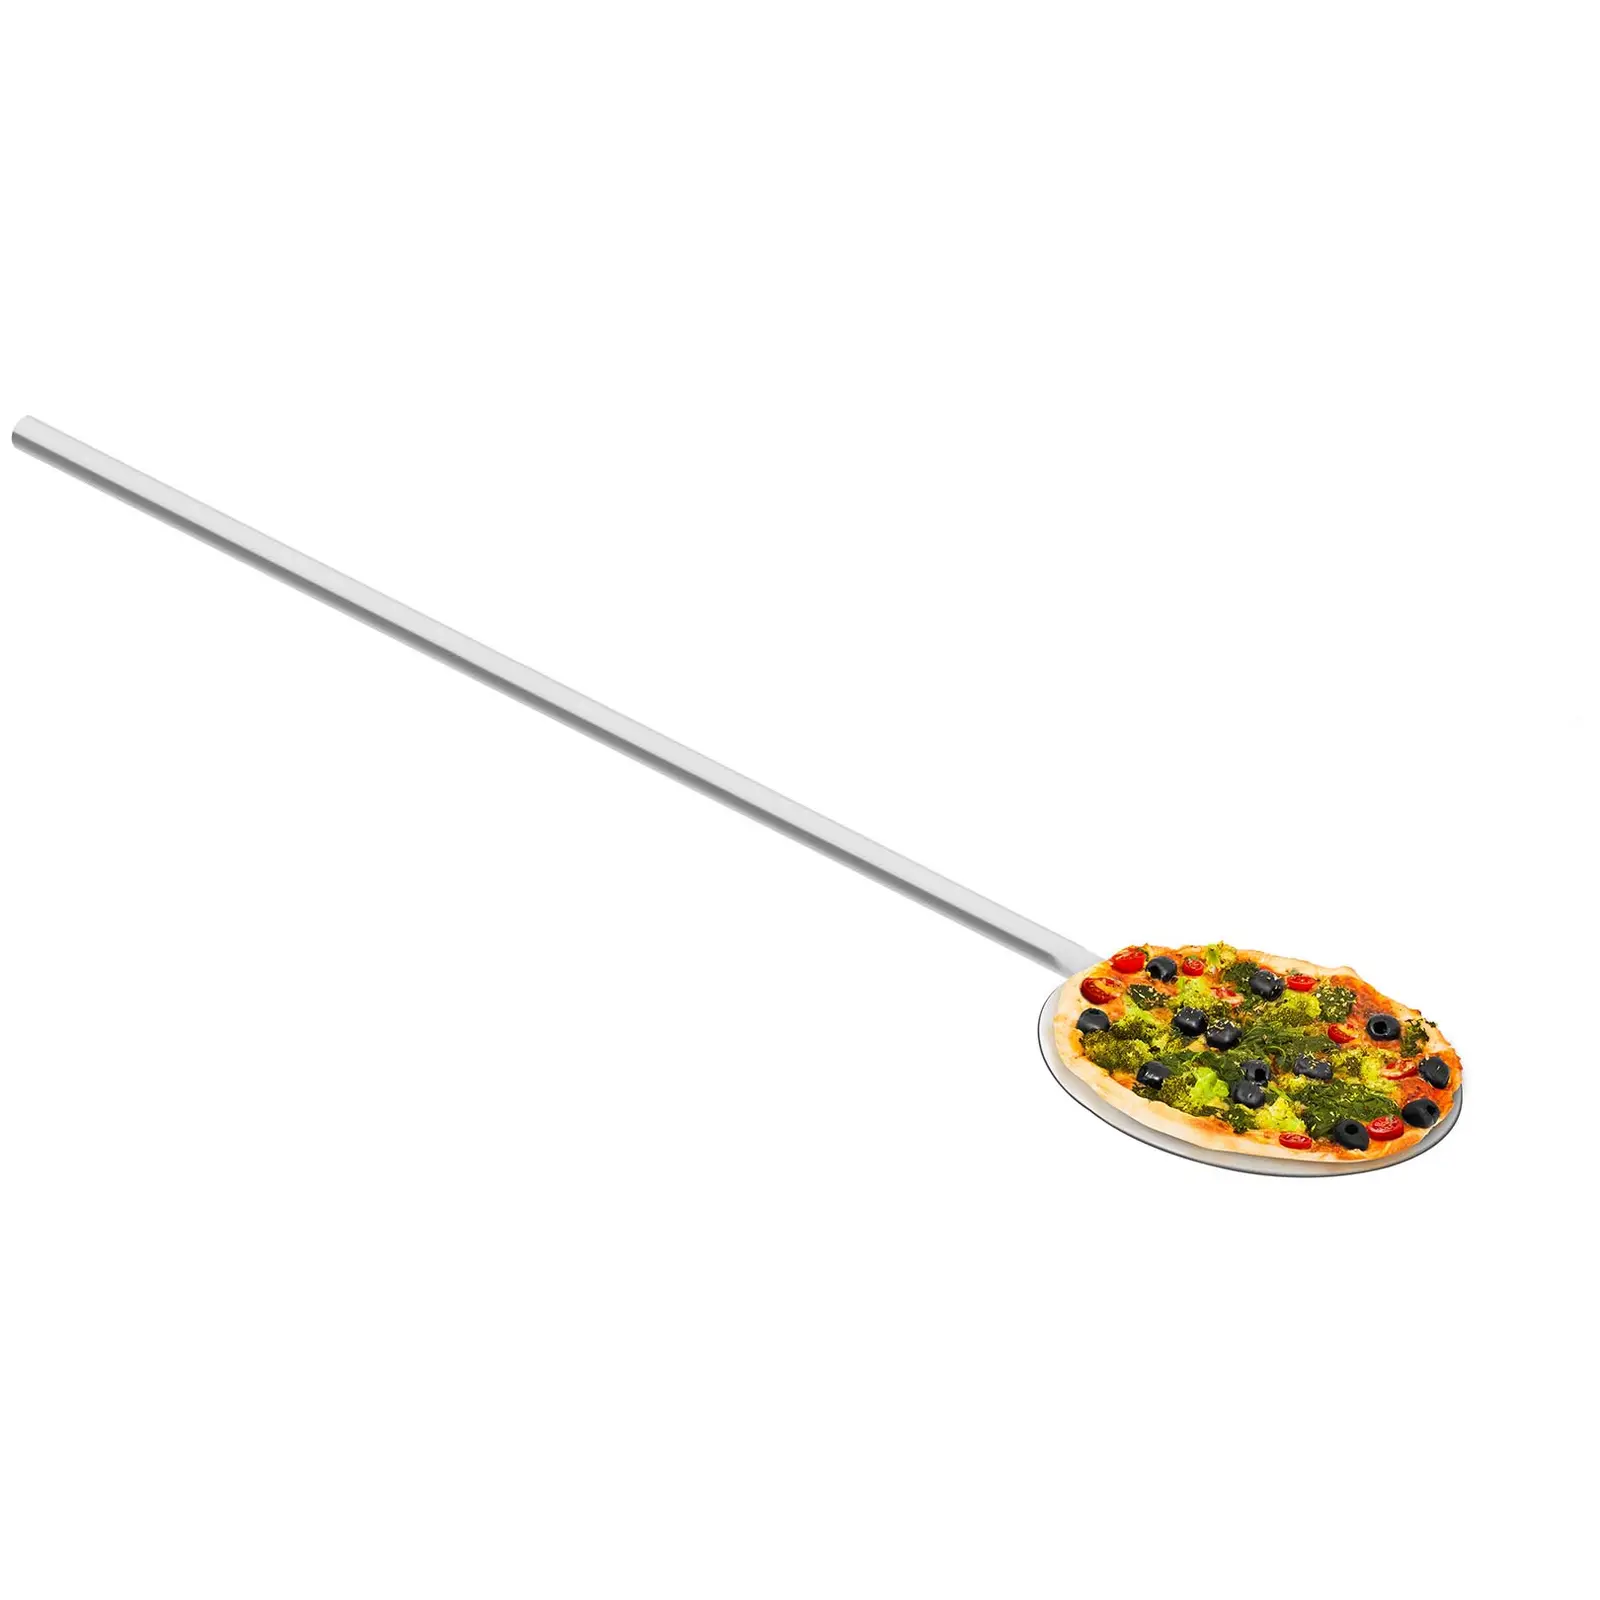 lopată pentru pizza -100 cm lungime - 20 cm lățime